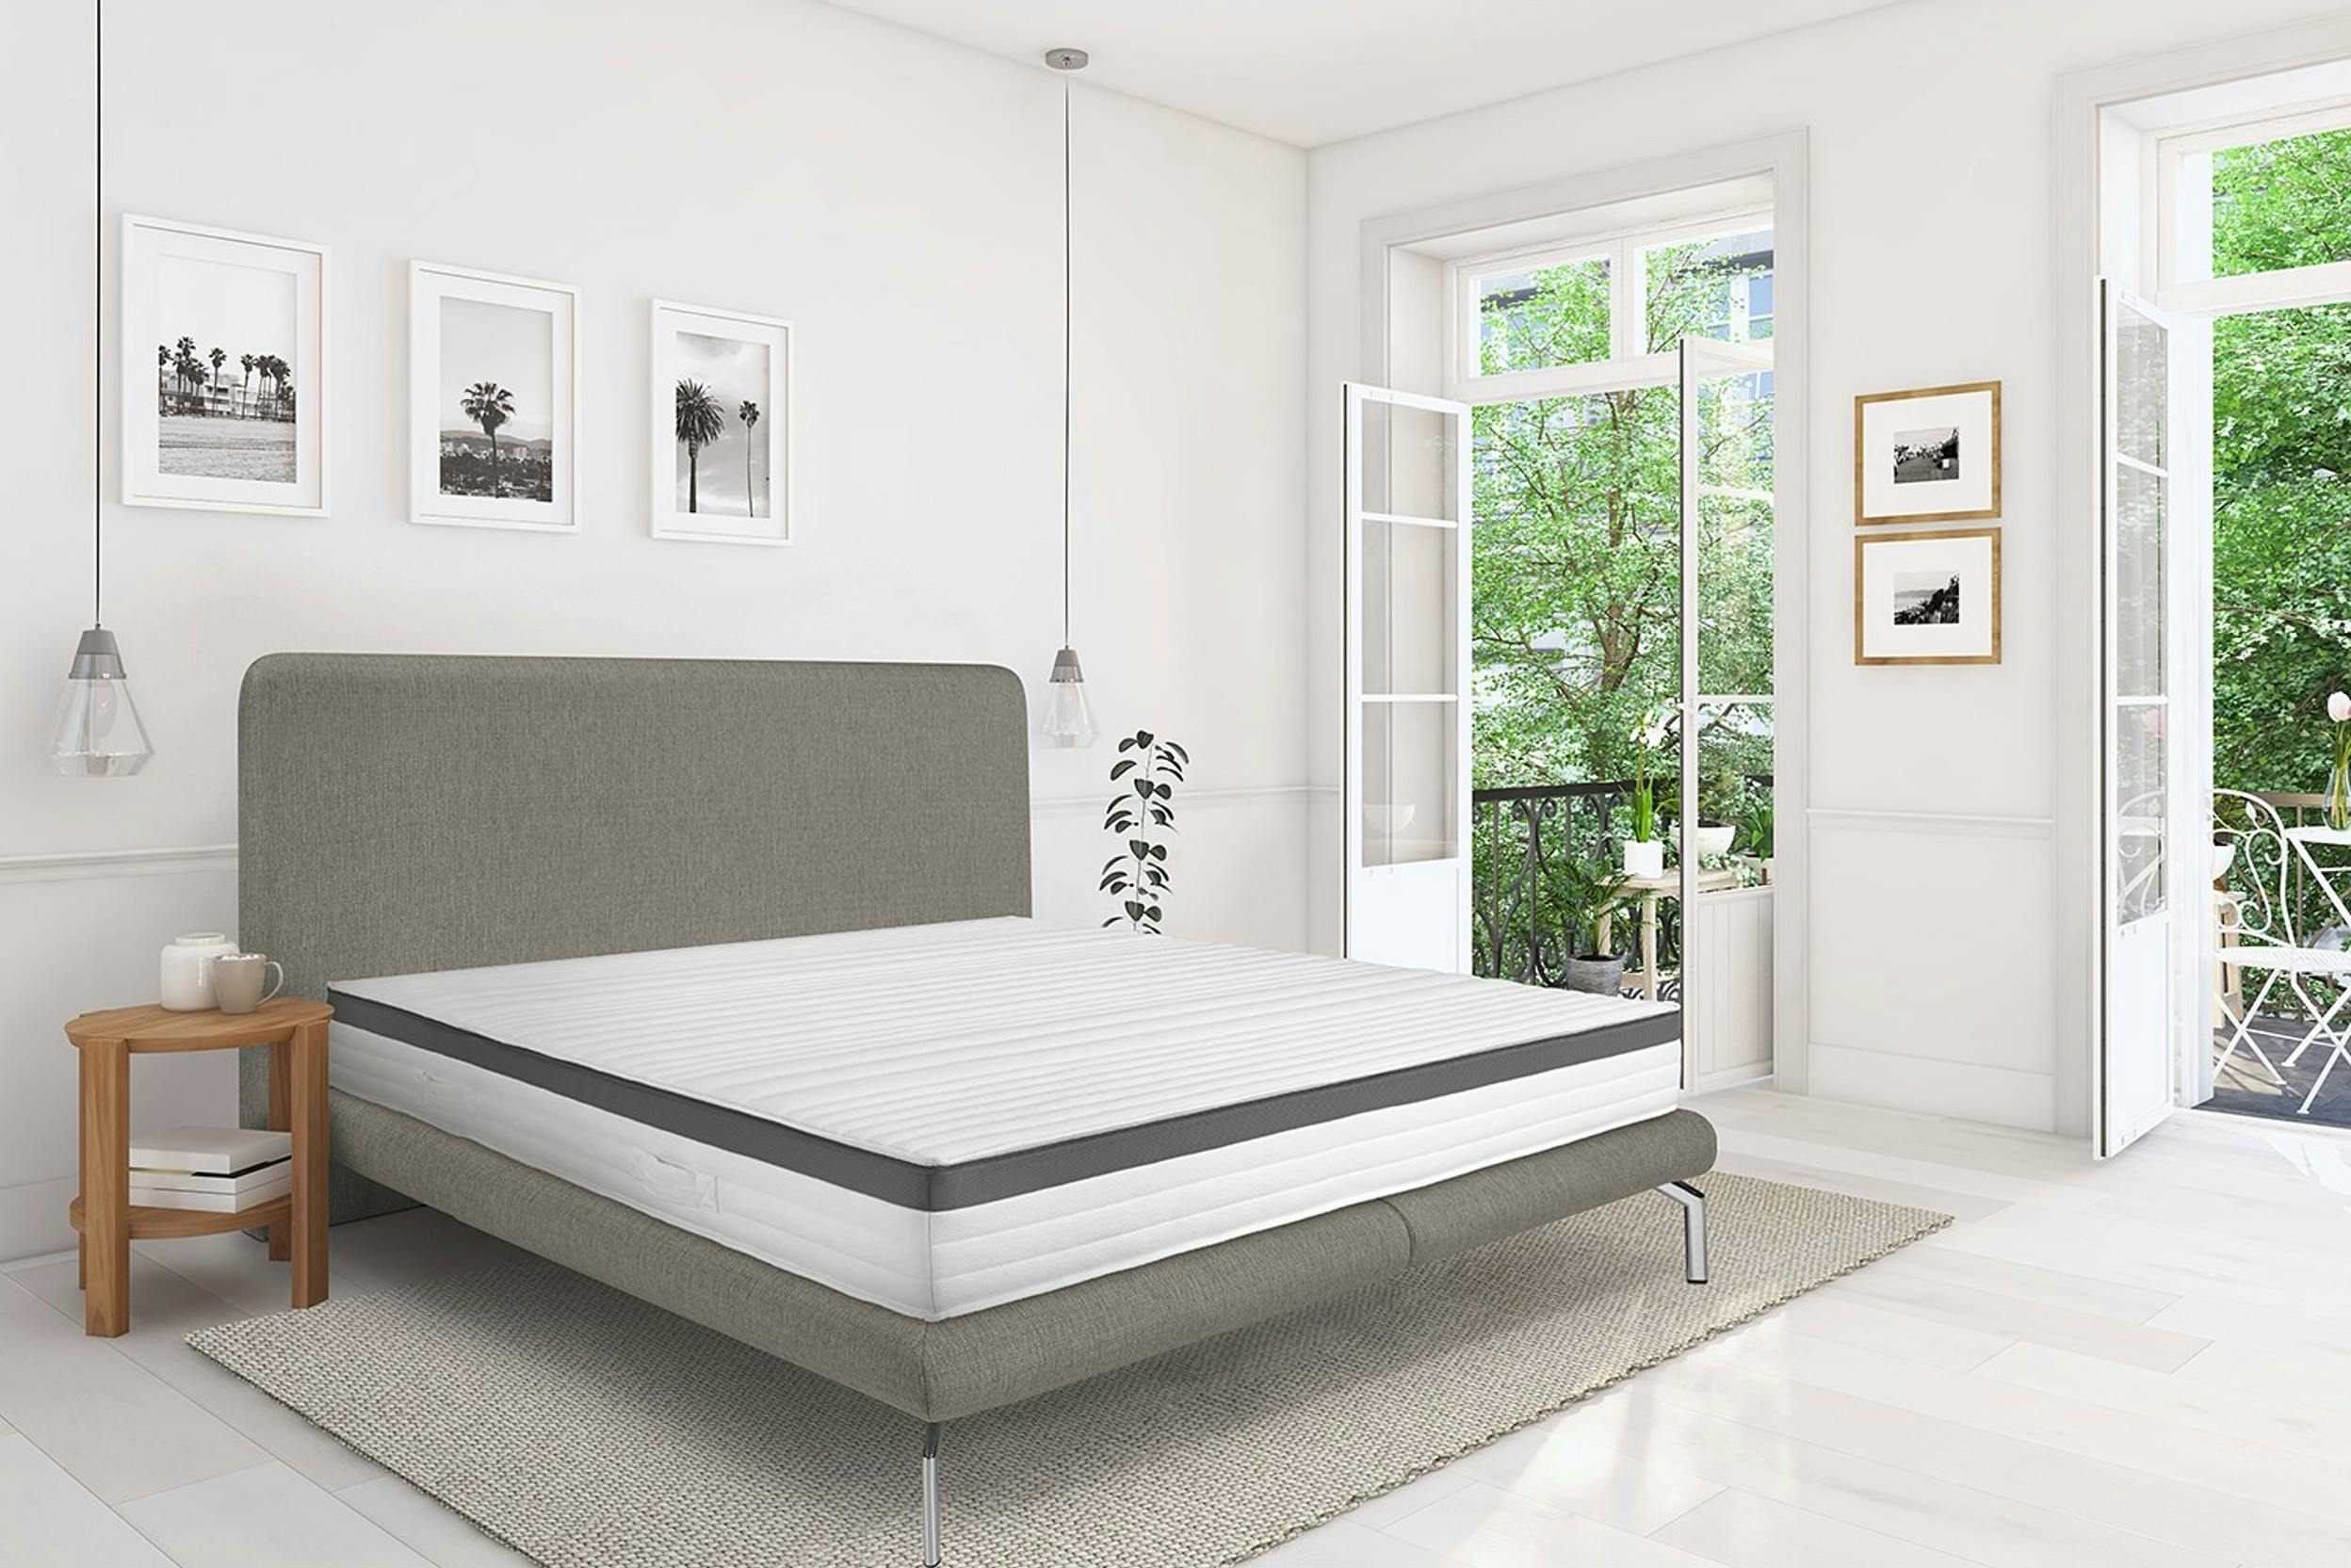 Helles Zimmer mit weit geöffneten Fenstern und grauem Bett samt Matratze